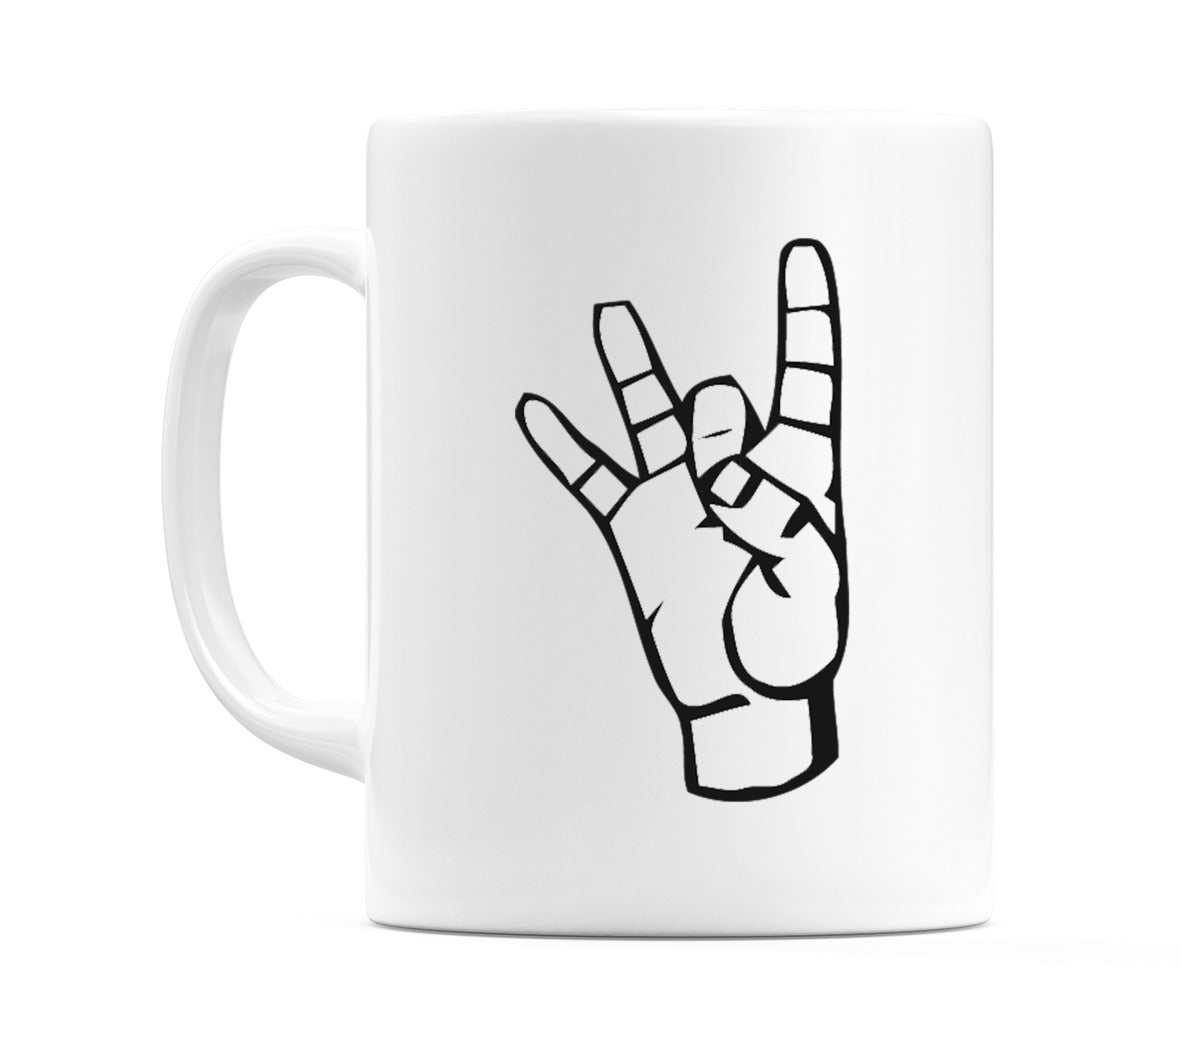 US Sign Language Number 8 Mug